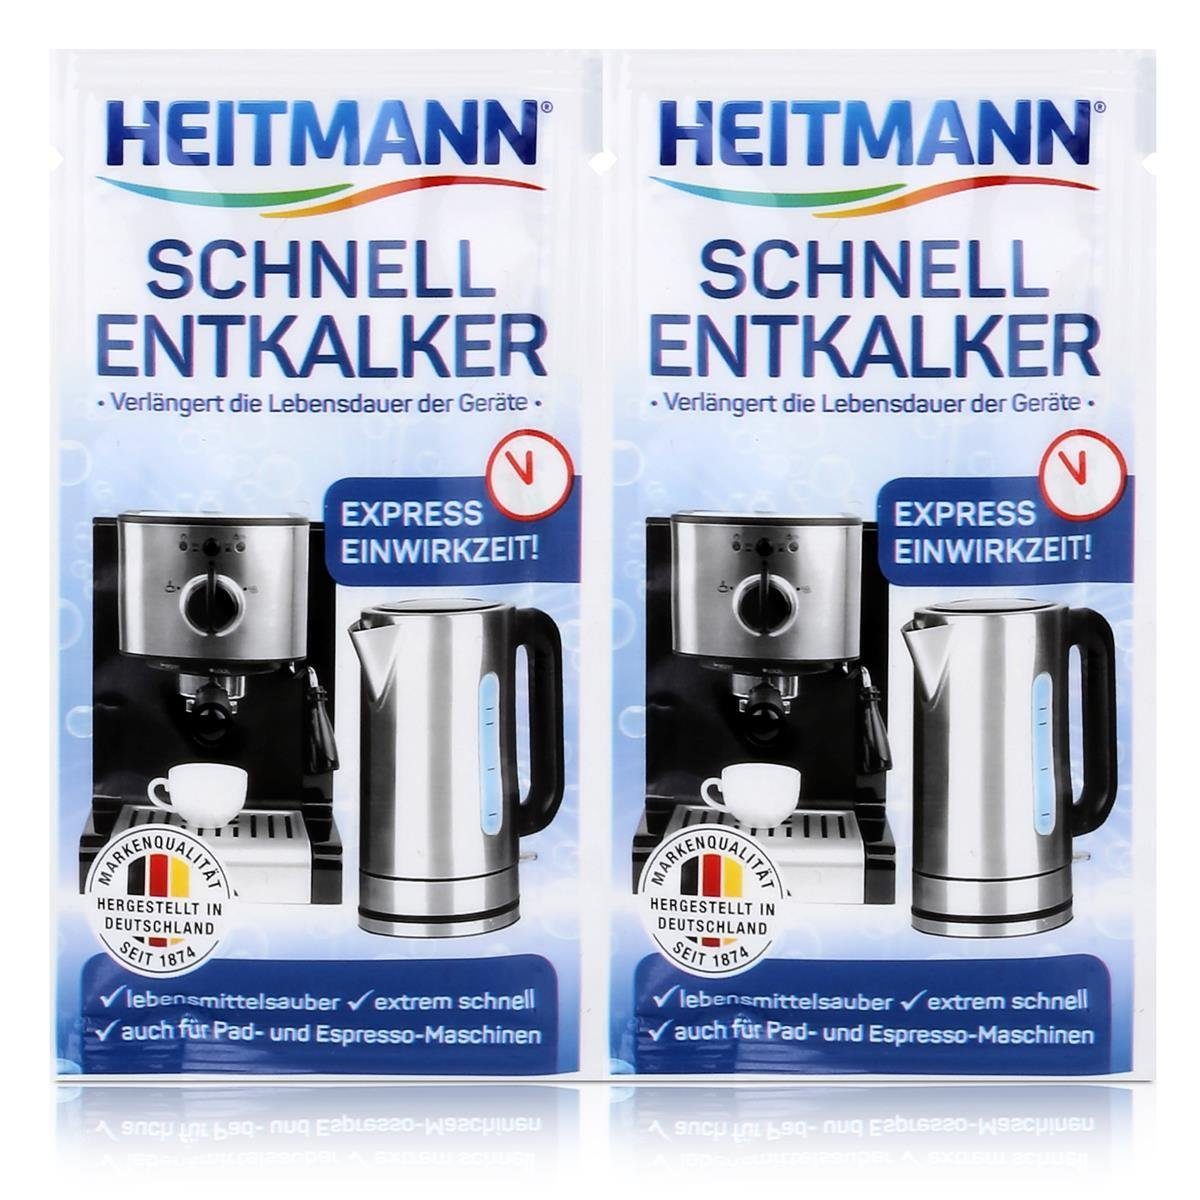 HEITMANN Heitmann Schnell-Entkalker 2x15g - Natürlicher Universalentkalker (1er Entkalker